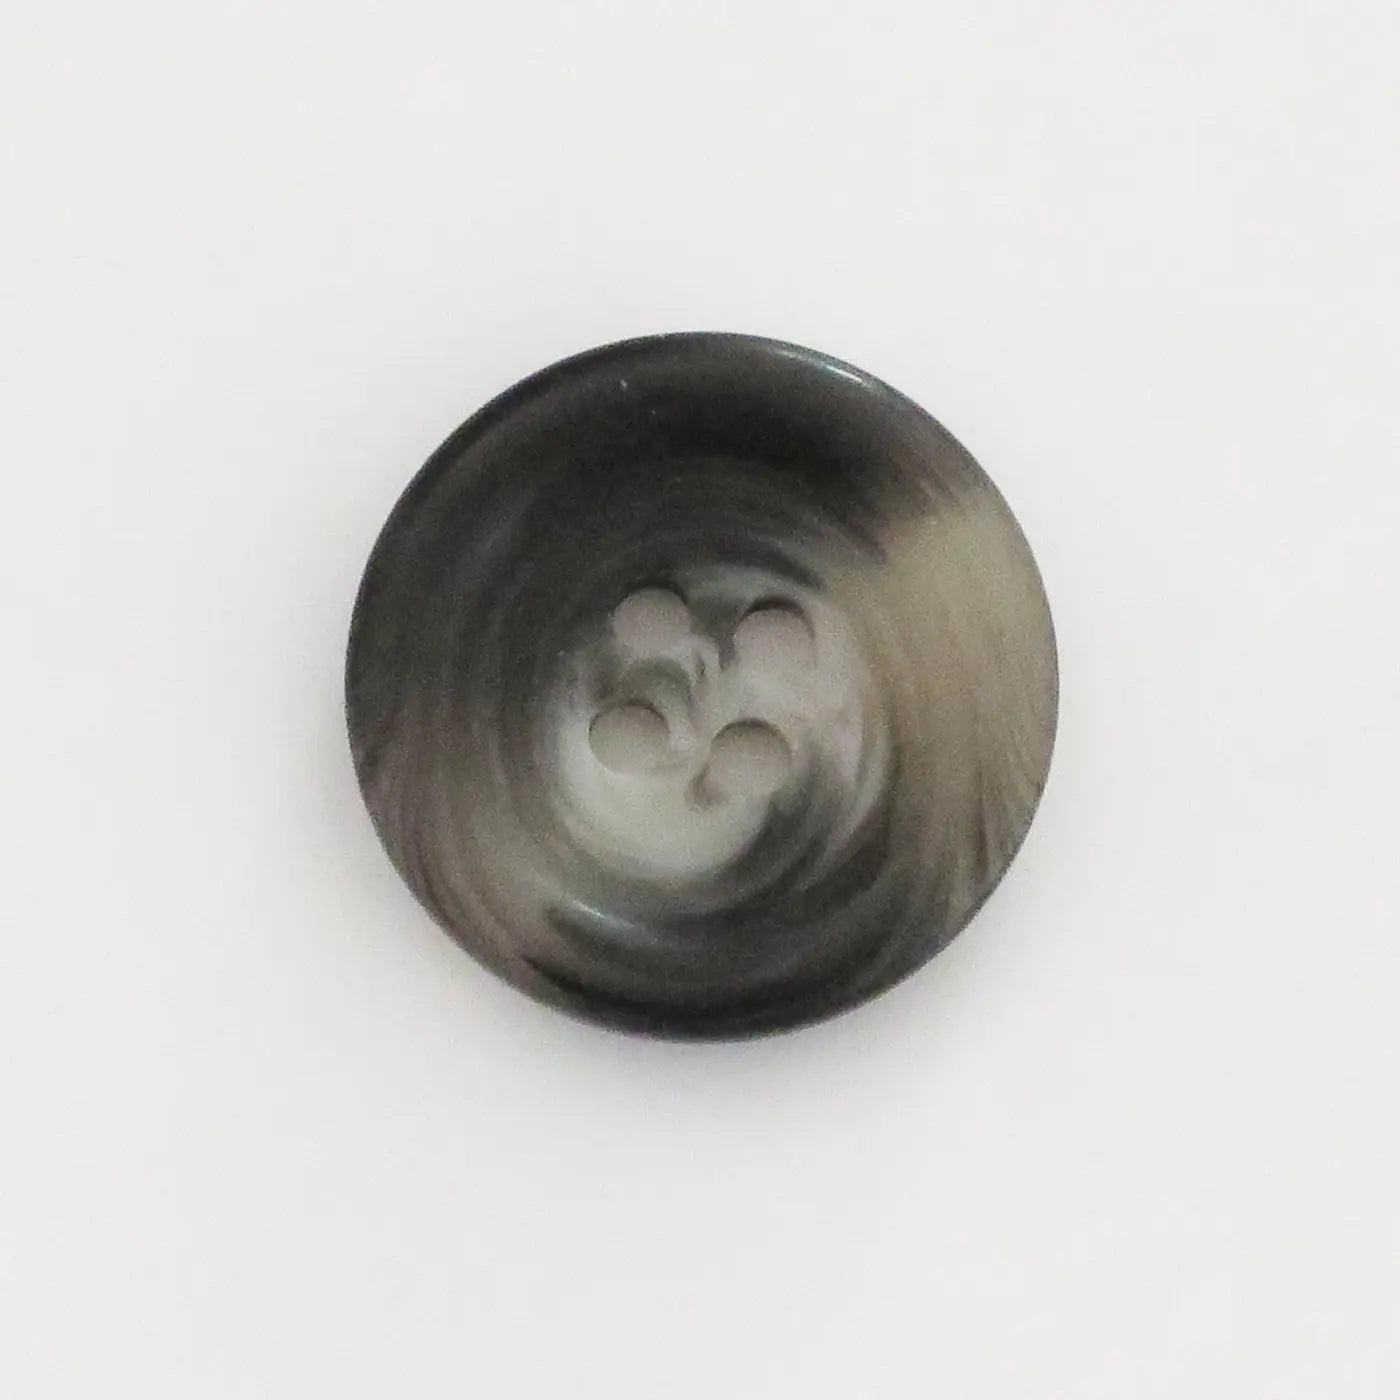 Meleret sort plastikknap, 15 mm